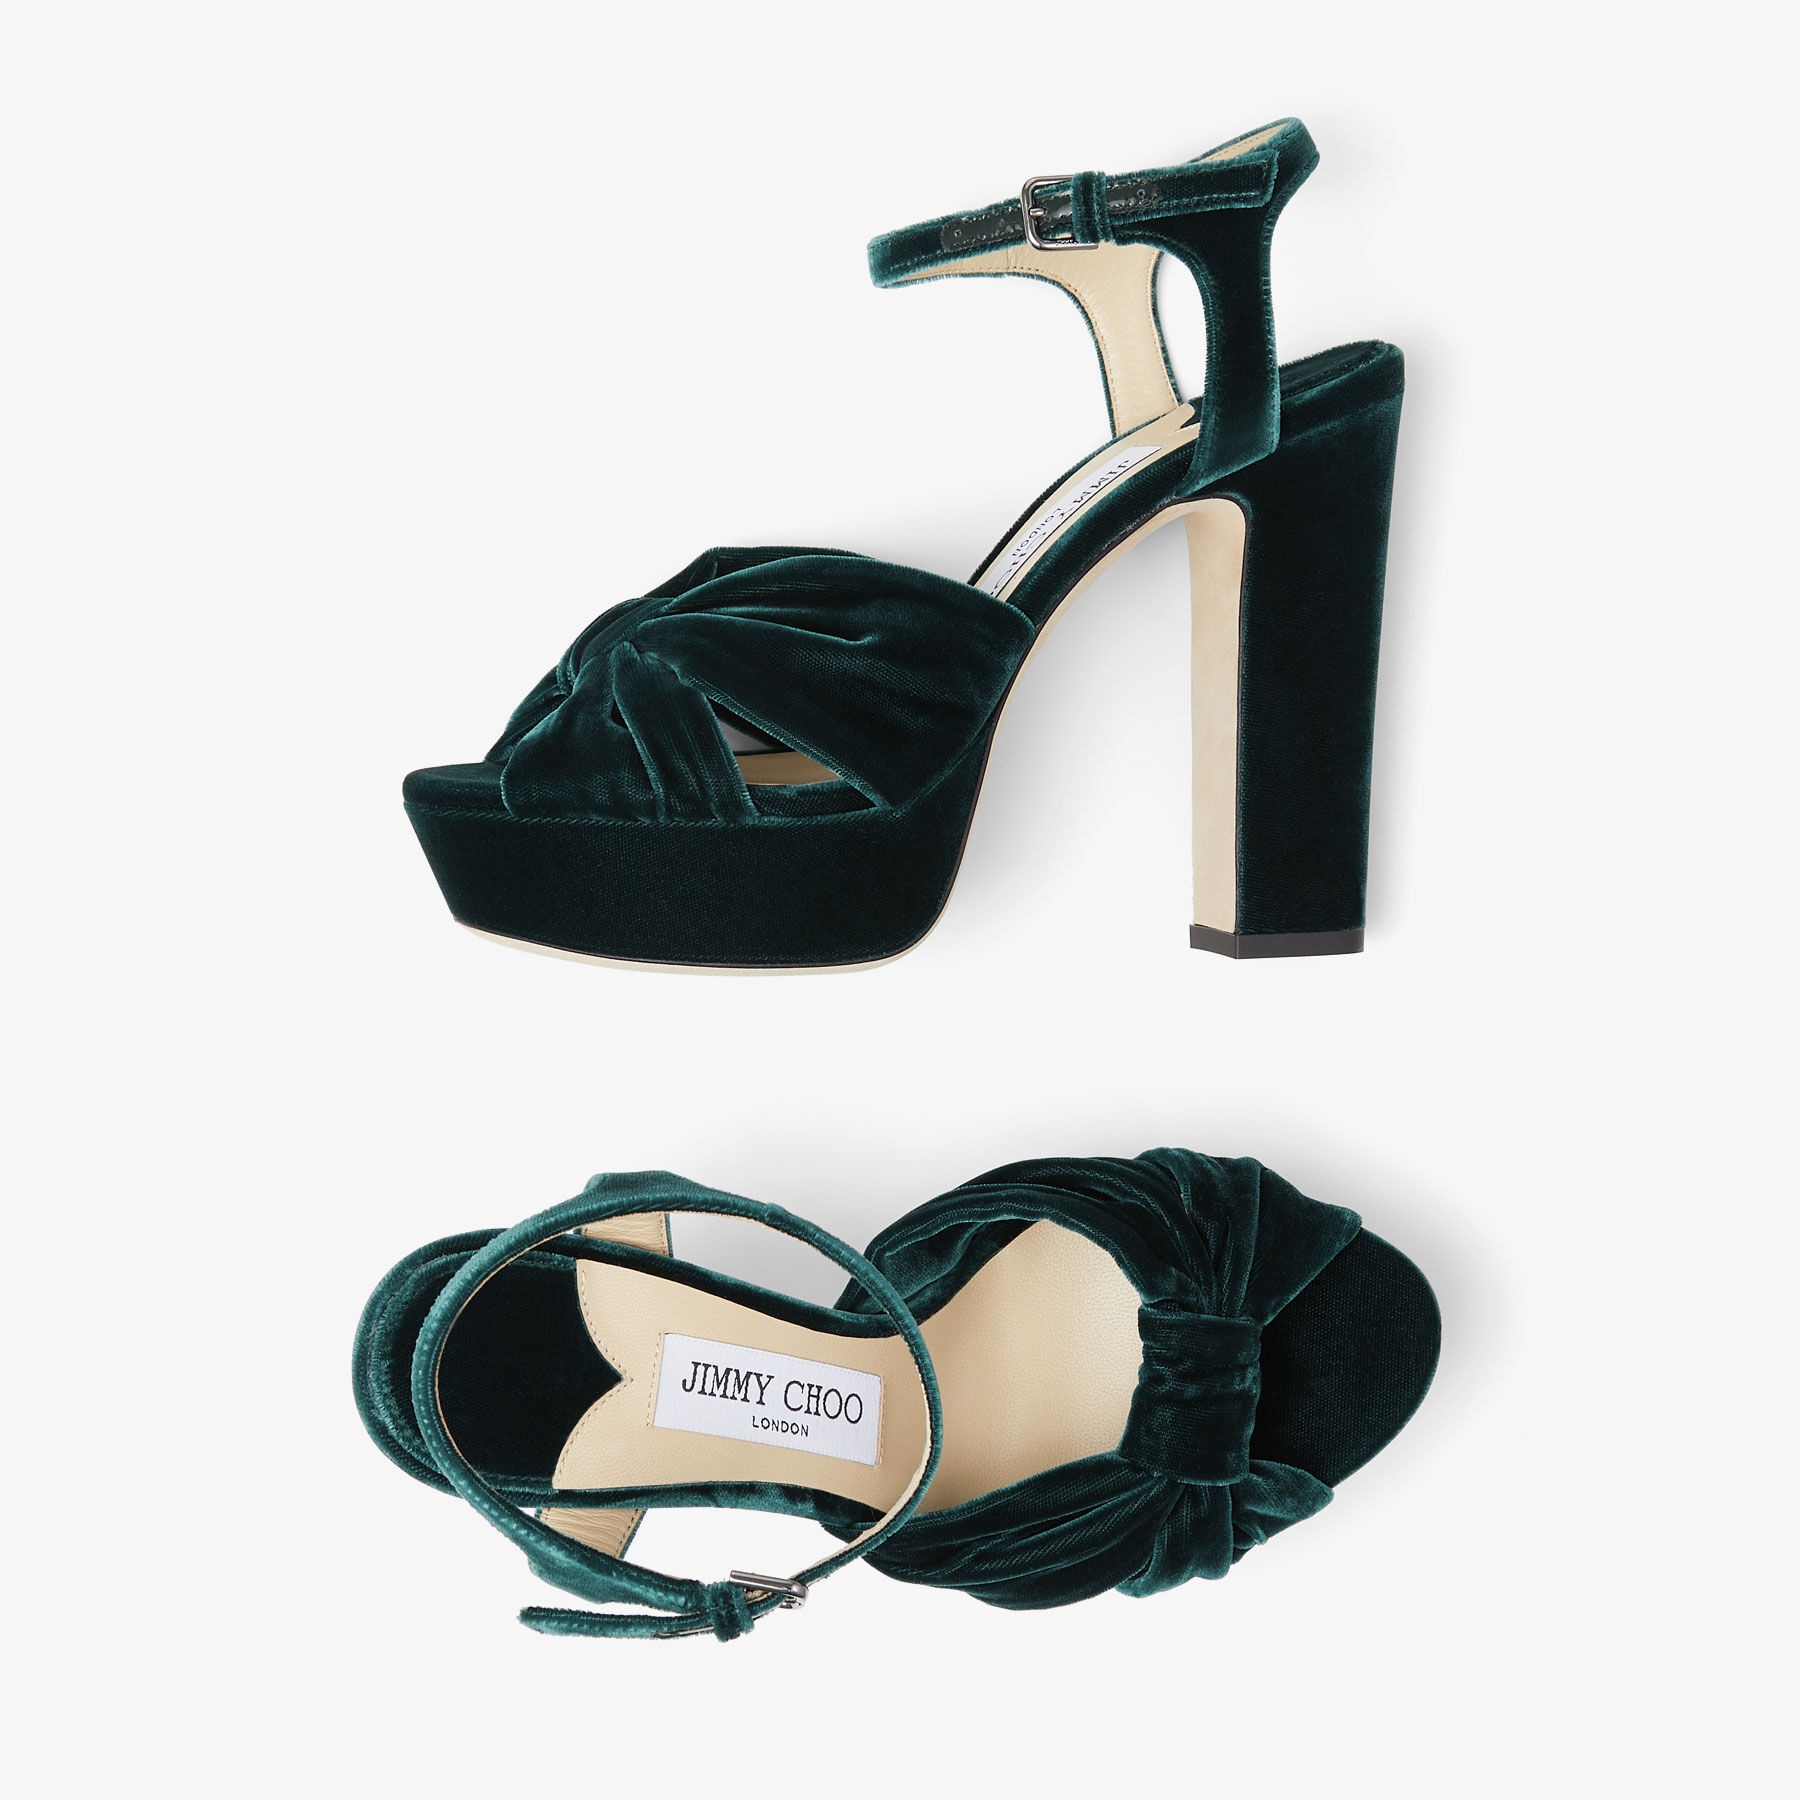 Heloise 120
Dark Green Velvet Platform Sandals - 5